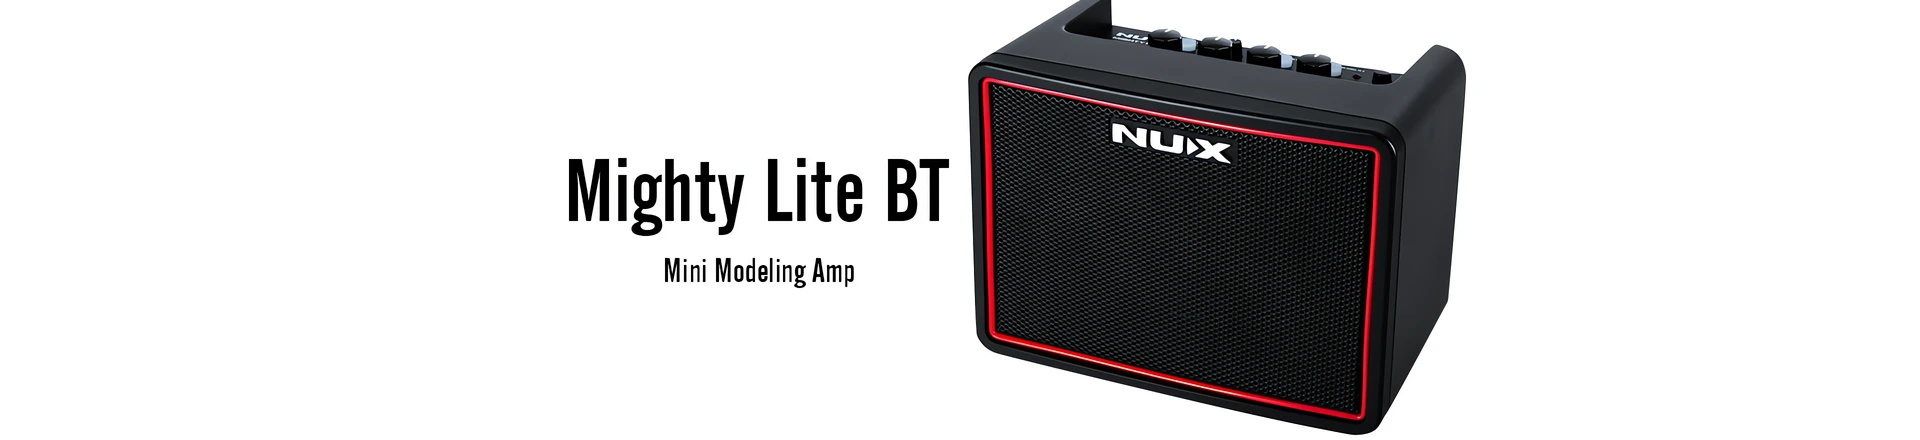 Mighty Lite BT - miniatury wzmaczniacz firmy Nu-X 